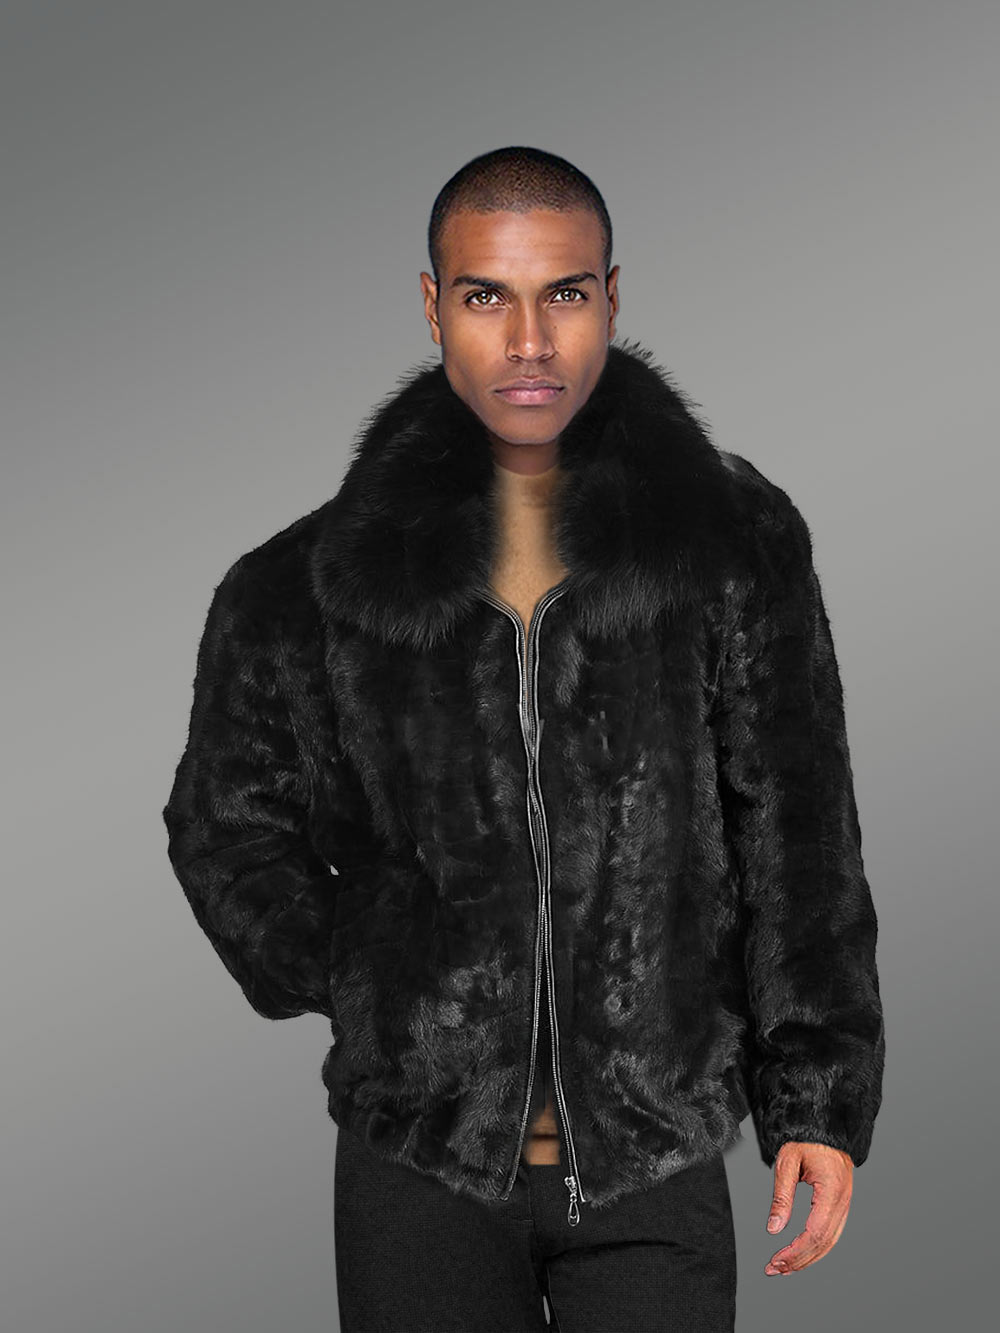 Jet Black Jacket in Mink Fur for Men